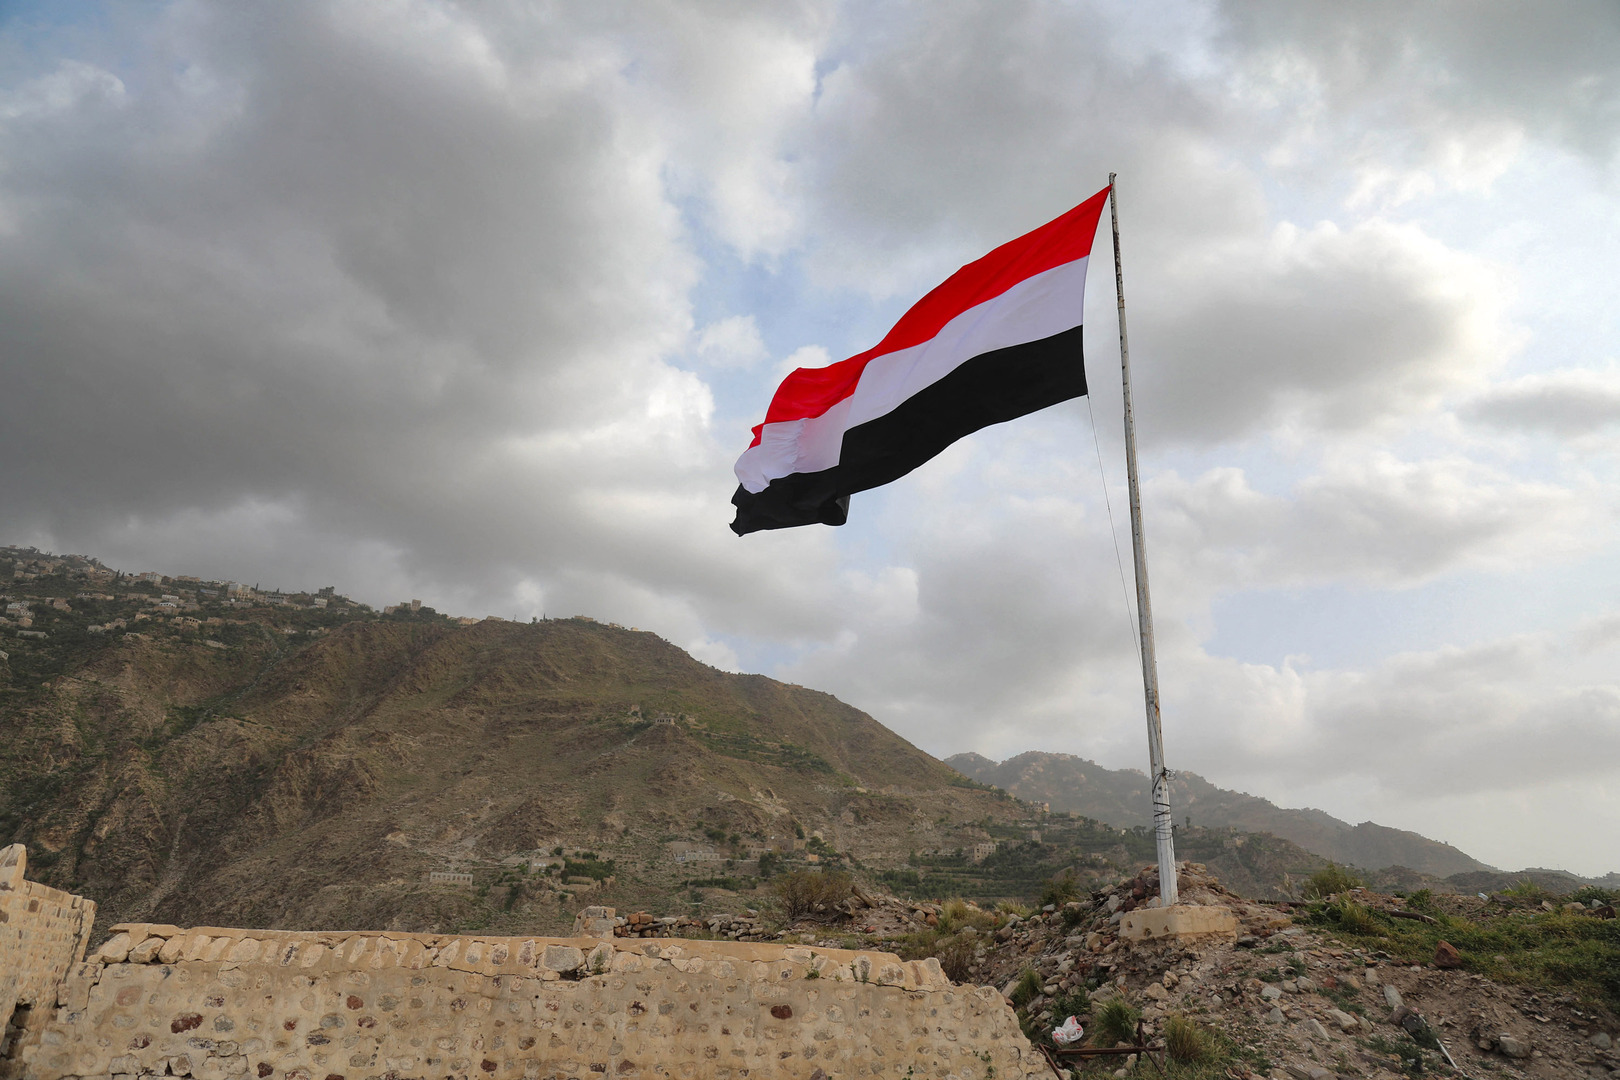 صندوق النقد العربي يوقع اتفاقا مع حكومة اليمن لدعم برنامج الإصلاح الاقتصادي والمالي بمليار دولار